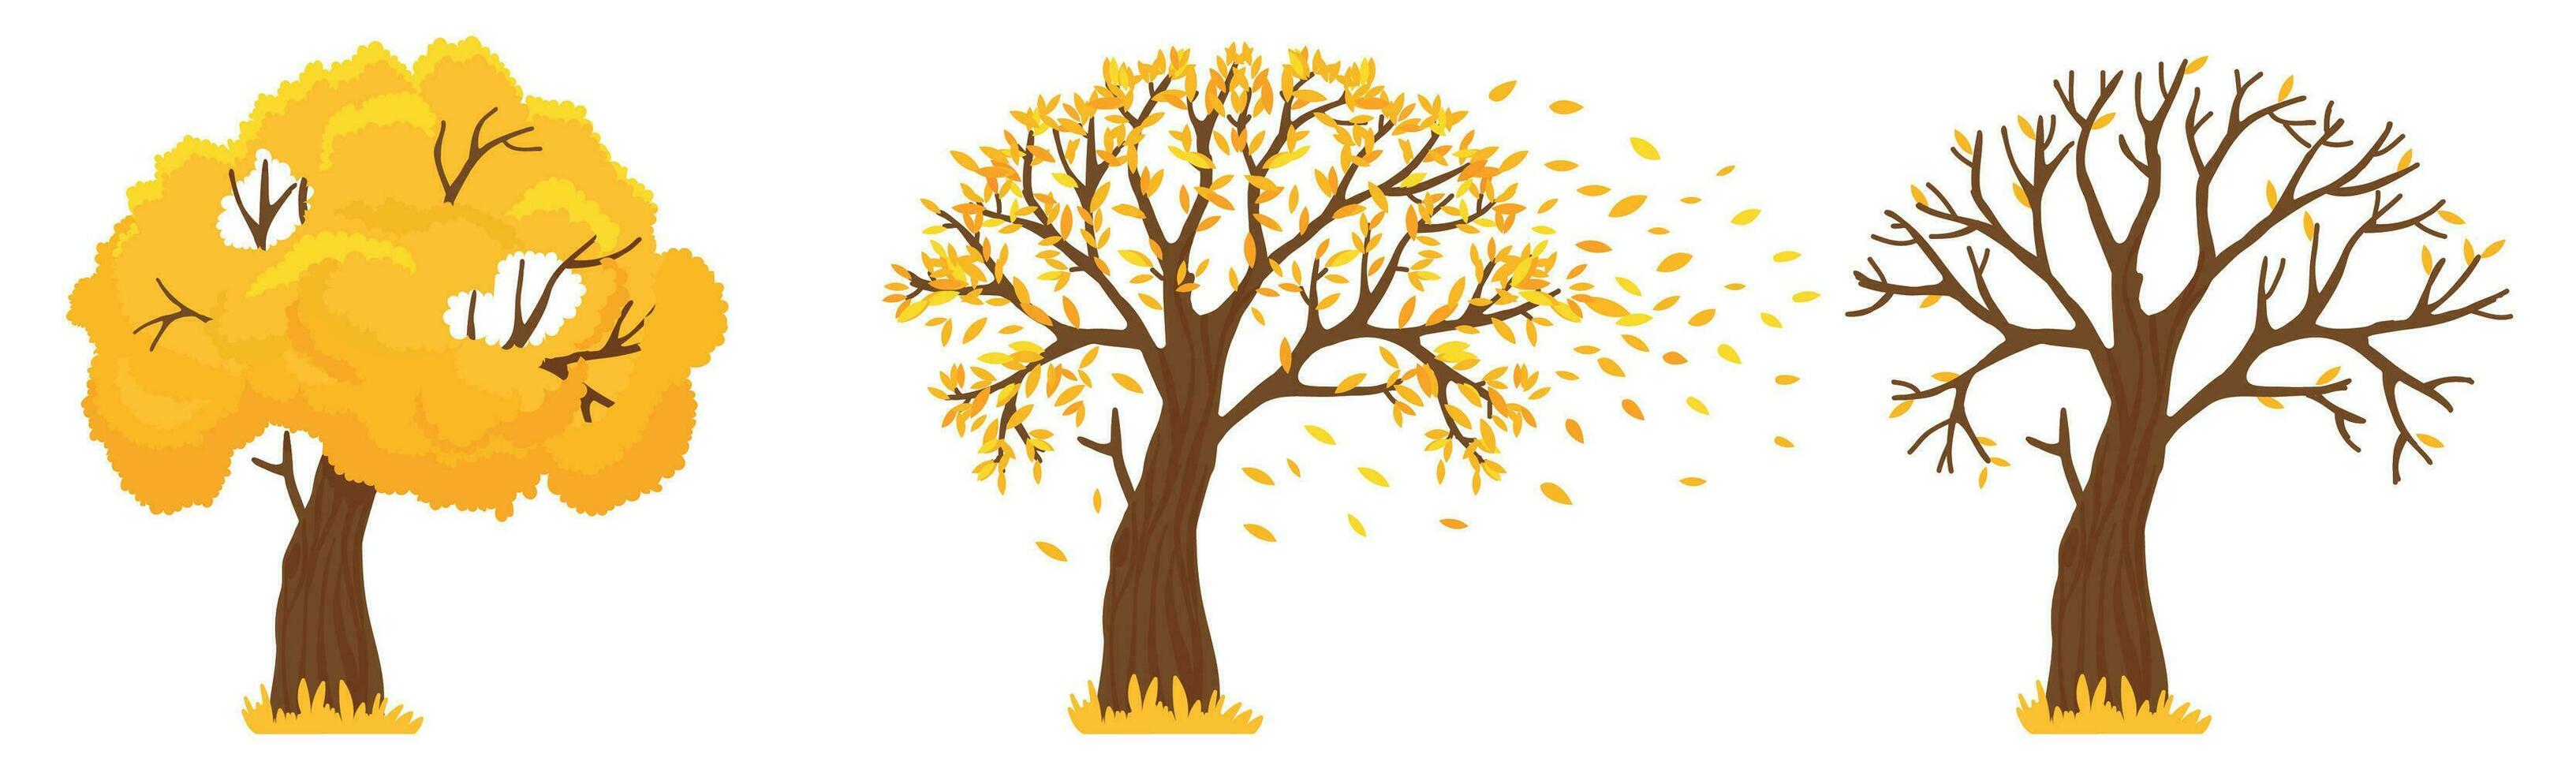 herfst boom. geel bladeren val, bomen met gedaald bladeren en oranje doorbladert vlieg vector illustratie